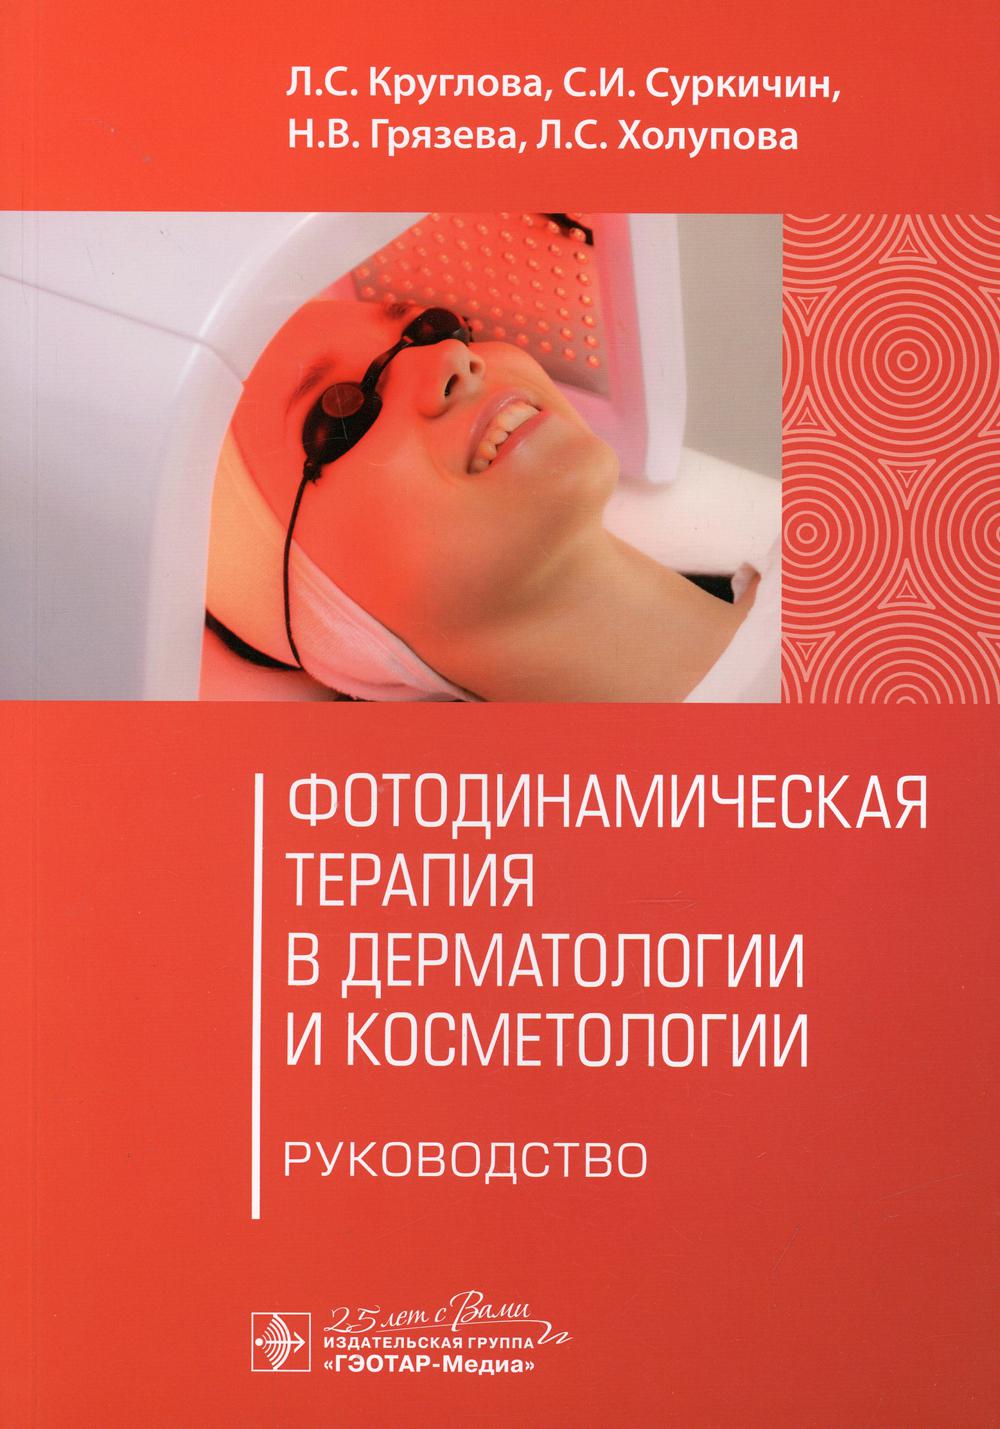 фото Книга фотодинамическая терапия в дерматологии и косметологии гэотар-медиа